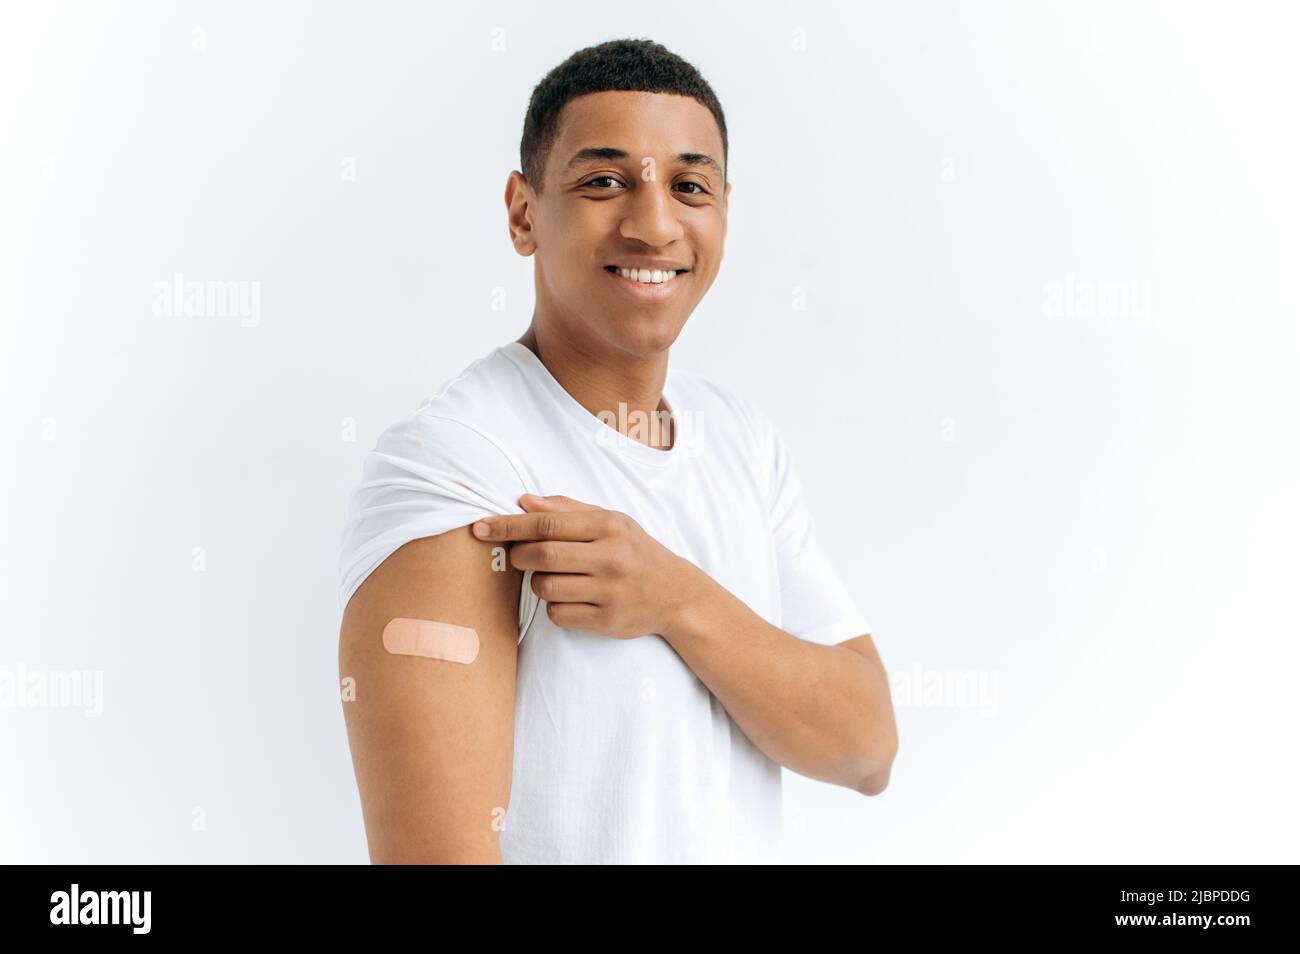 Mixed Race Happy Guy steht auf isoliertem weißem Hintergrund mit einem Gips auf seiner Schulter, erhielt einen Impfstoff gegen verschiedene Krankheiten, schaut auf die Kamera, lächelt. Gesundheits- und Immunitätskonzept Stockfoto